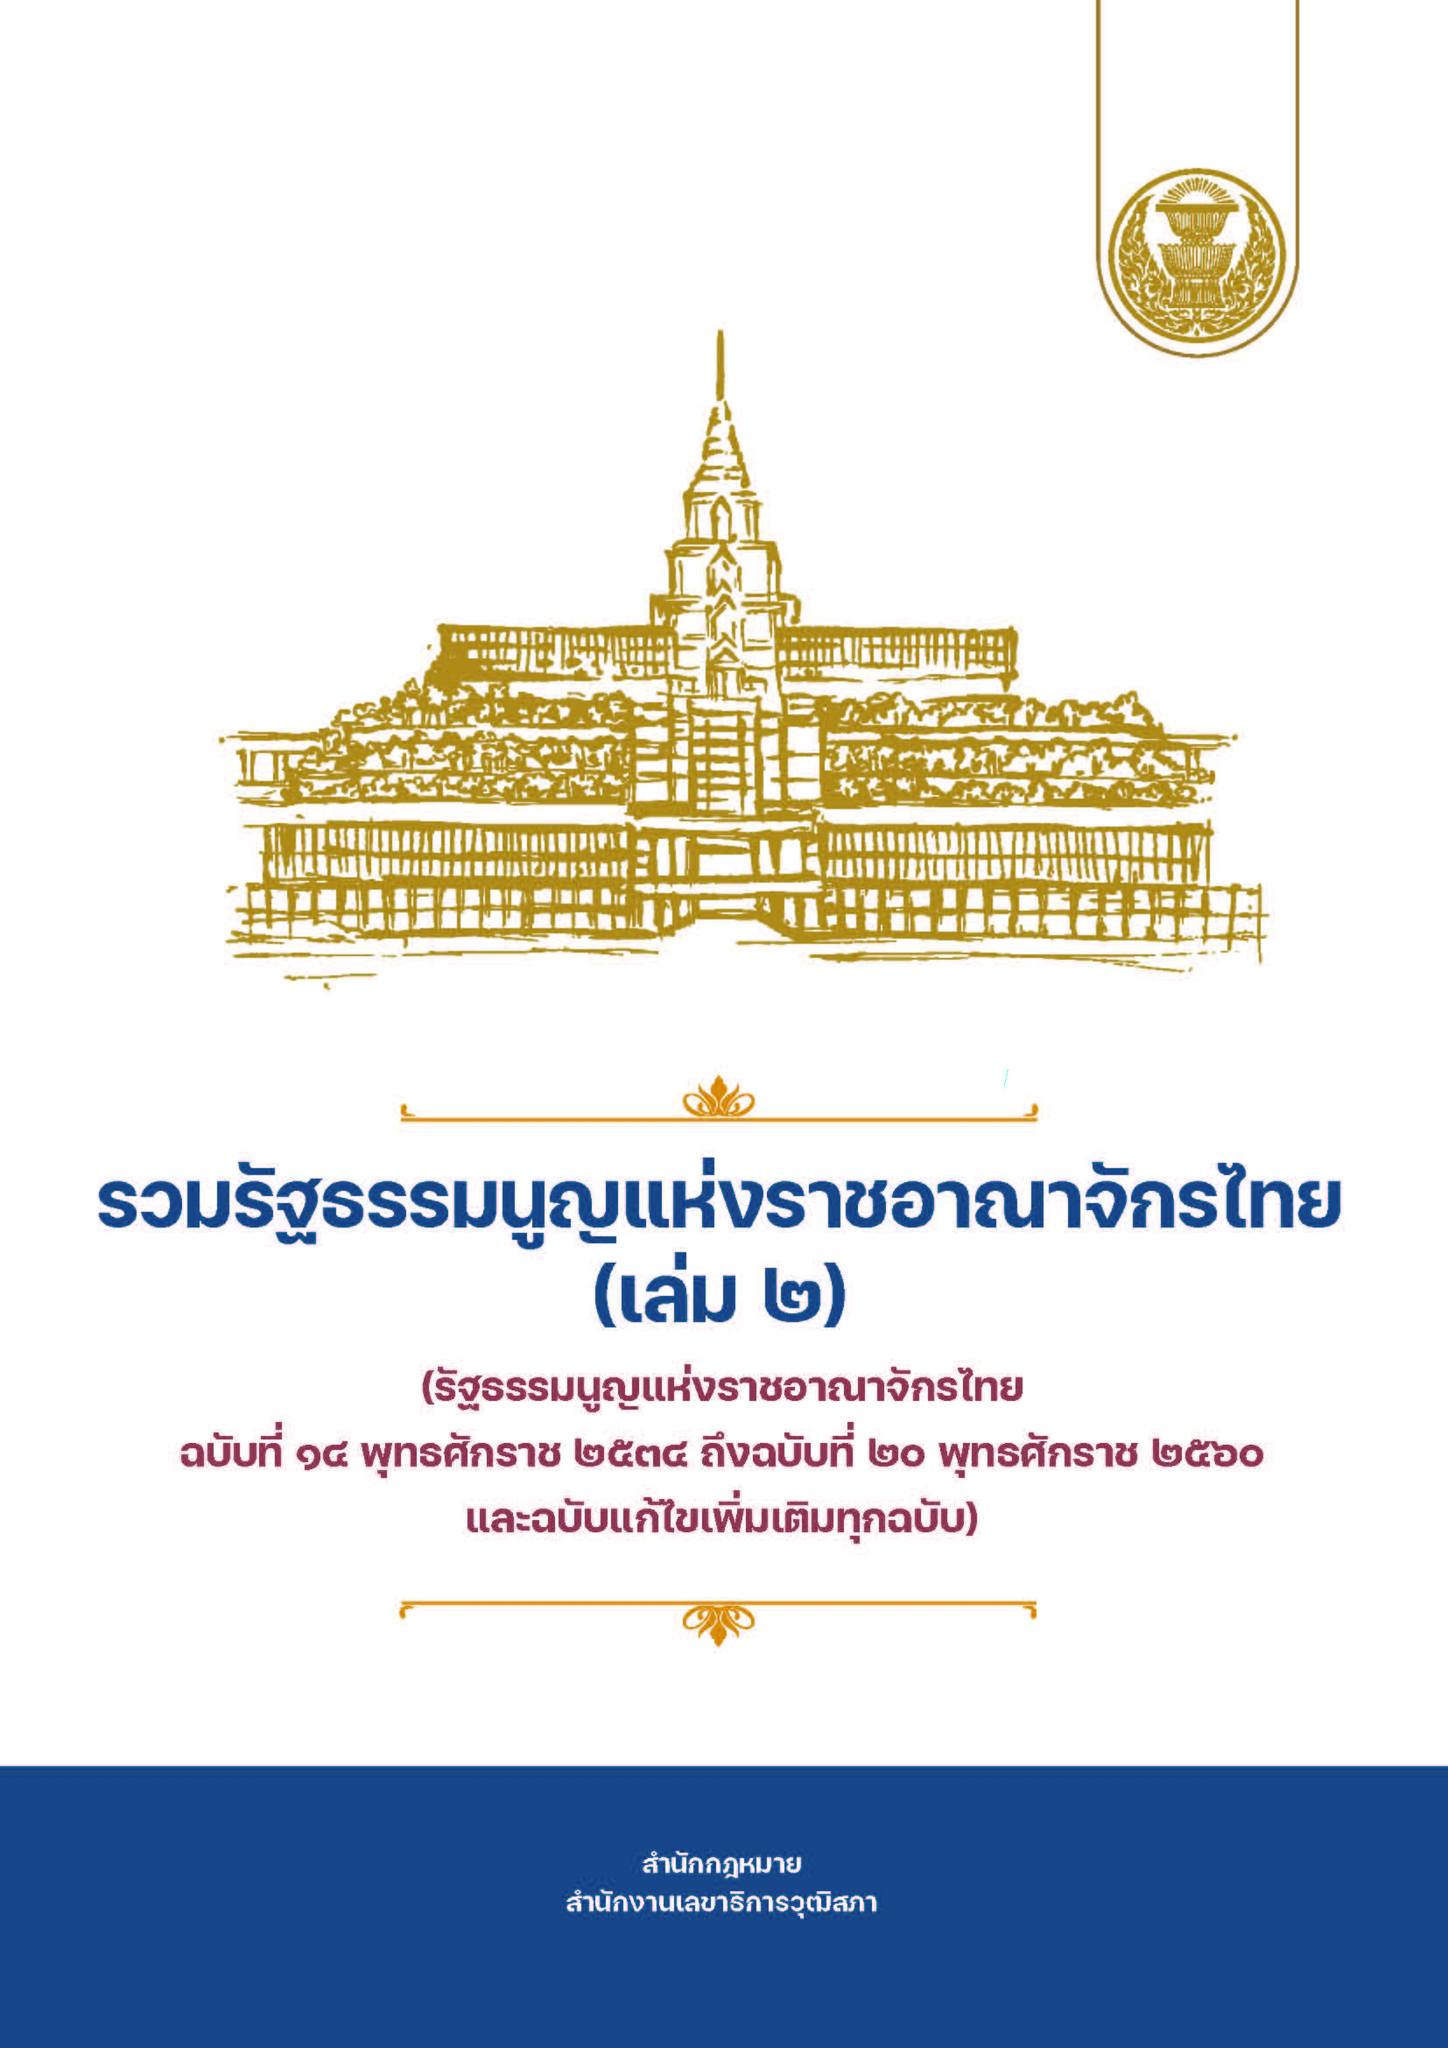 รวมรัฐธรรมนูญแห่งราชอาณาจักรไทย (เล่ม 2)